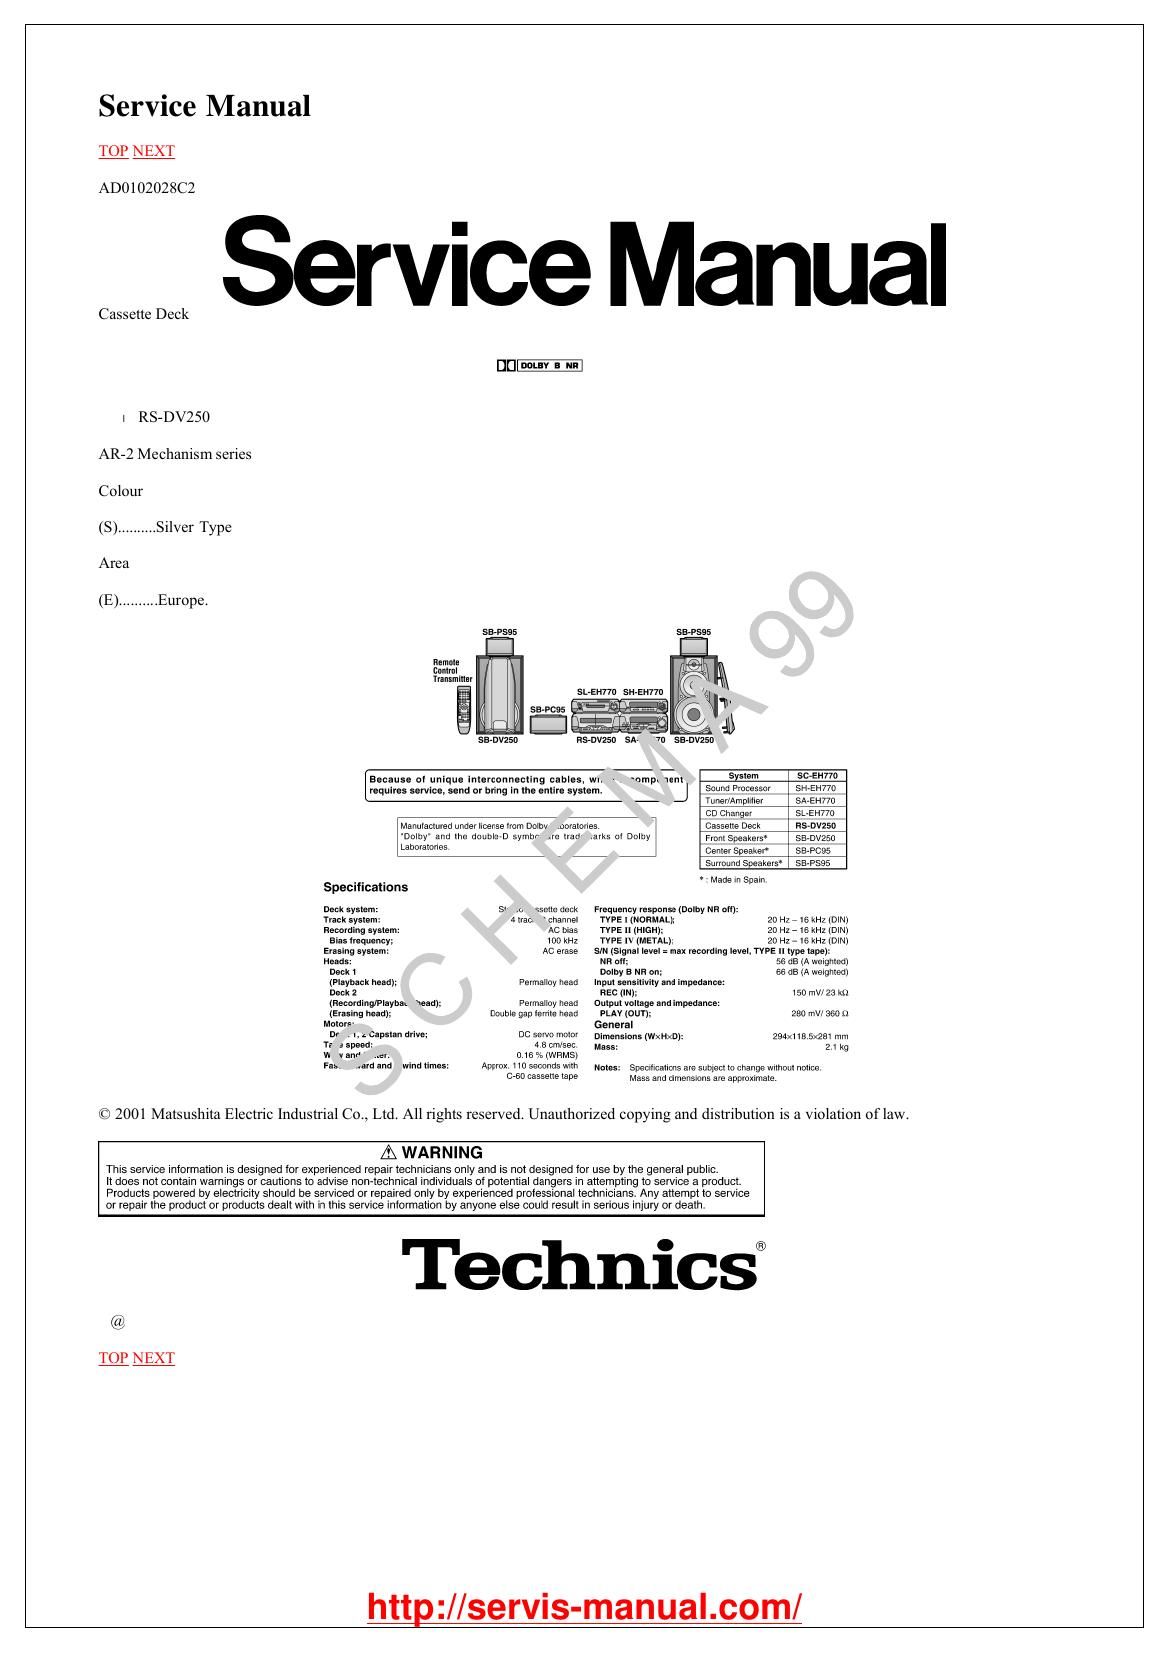 Technics RSDV 250 Service Manual